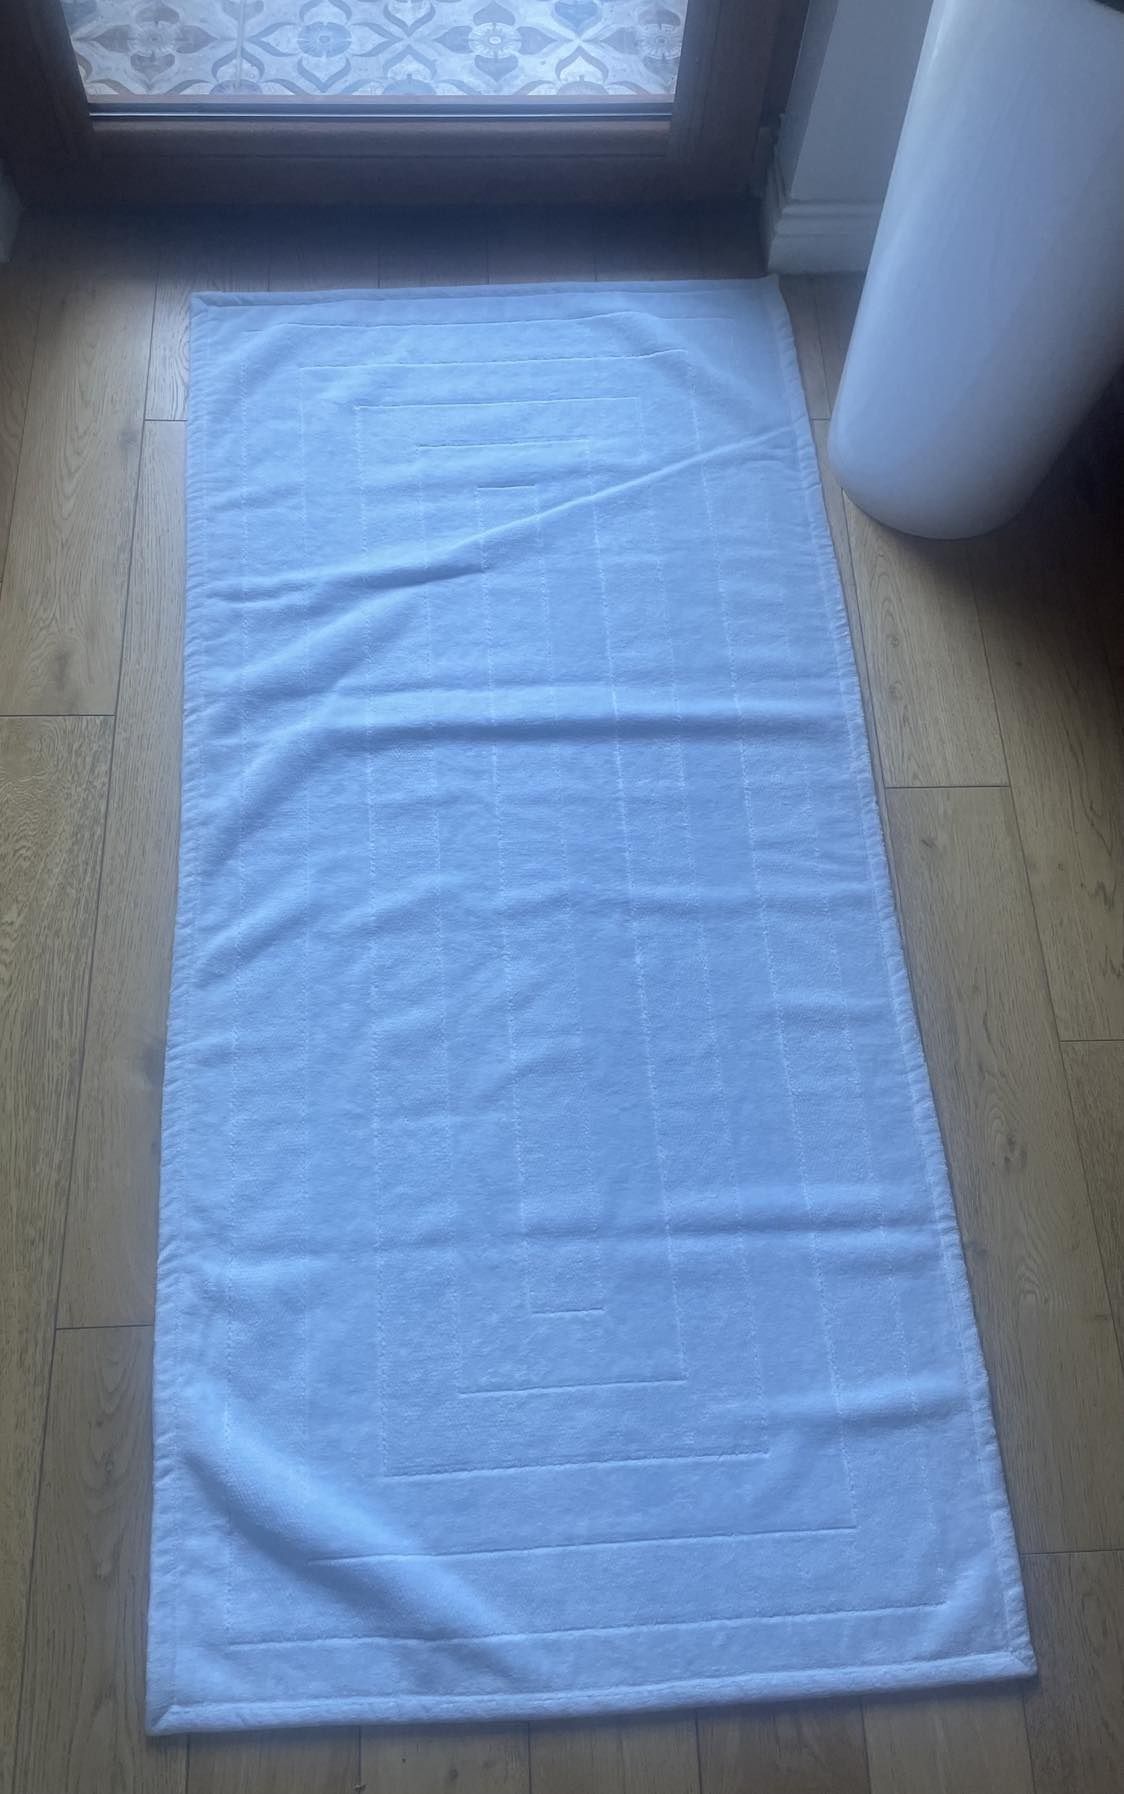 Nowy włoski chodnik dywanik łazienkowy, kolor błękity